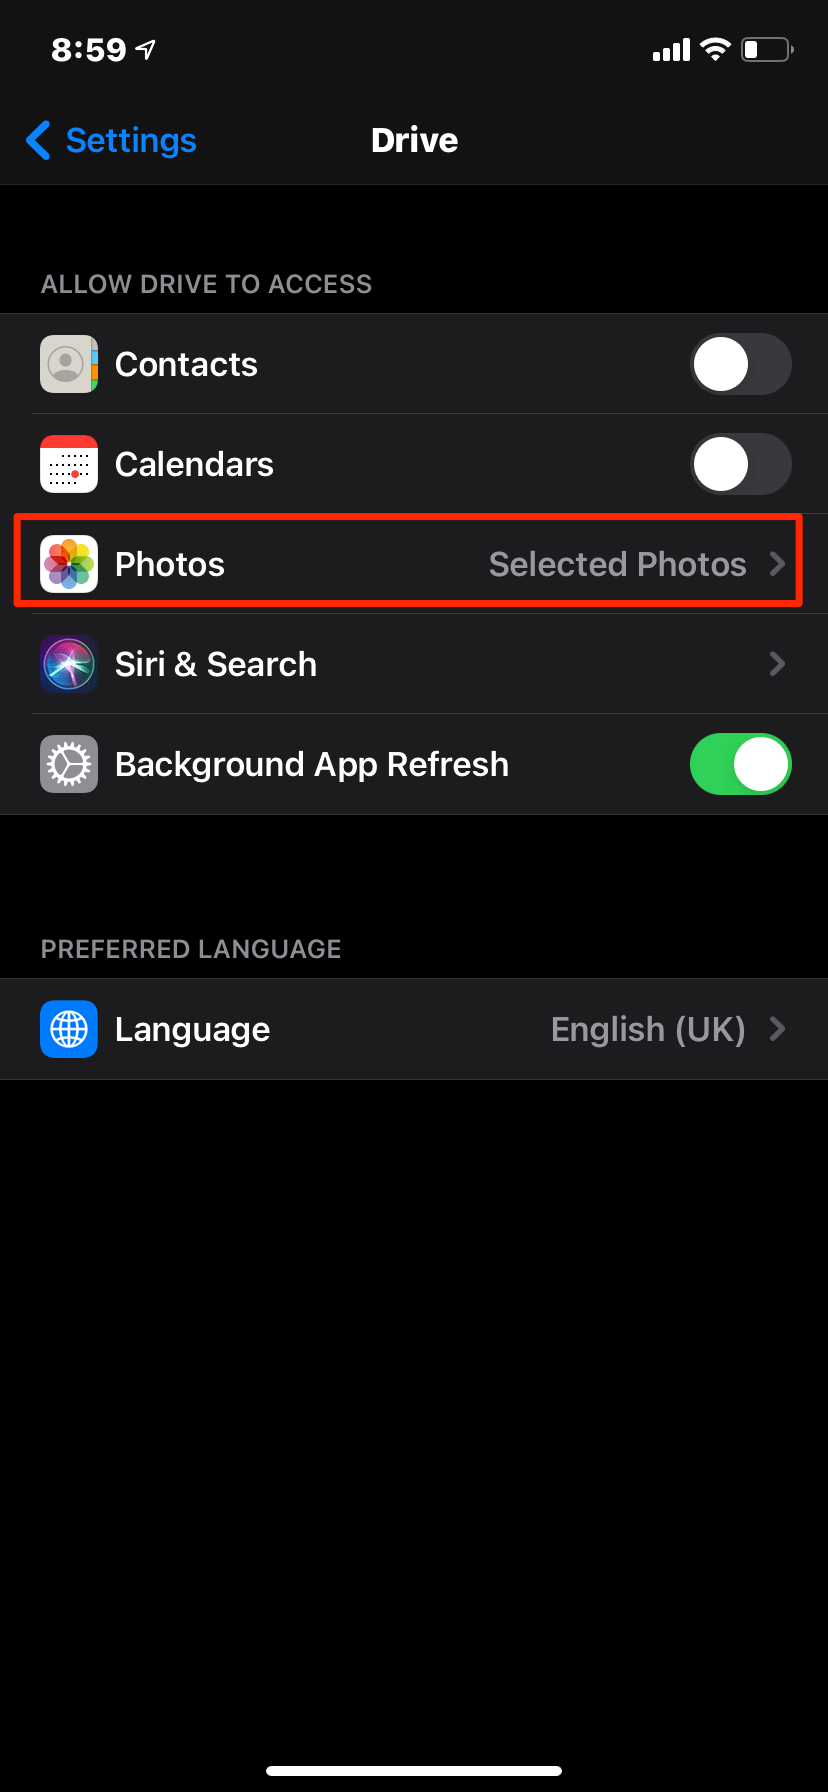 Select_Photos_Option